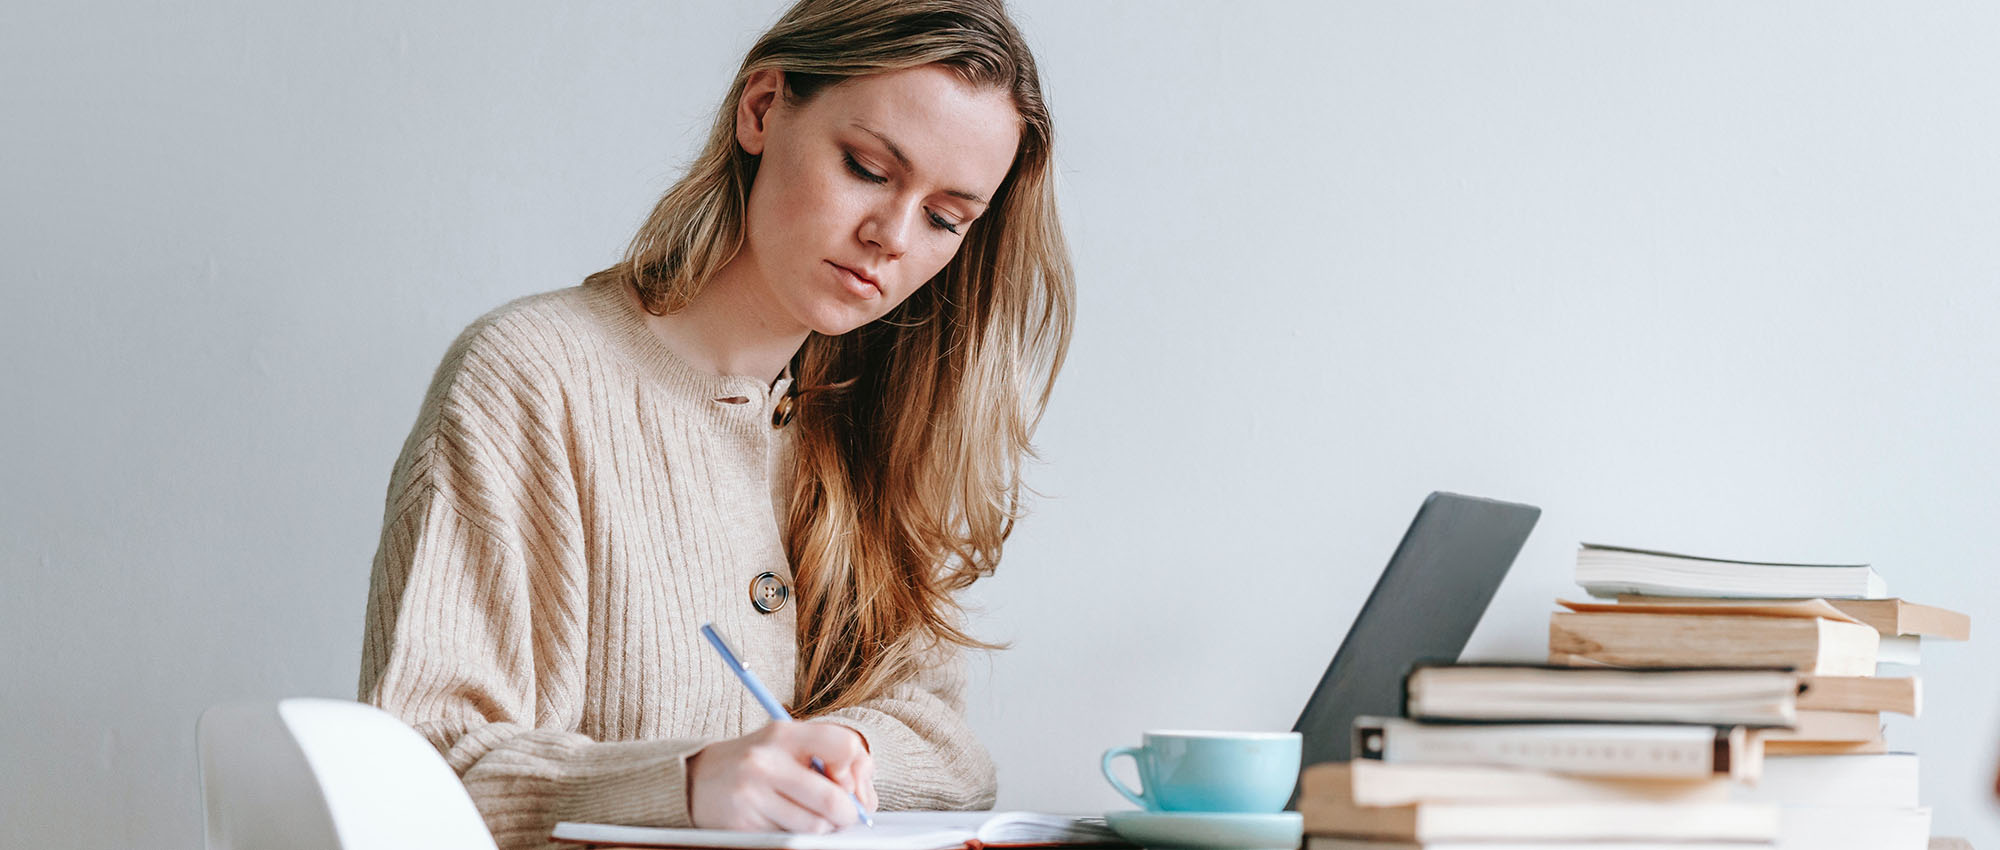 Sie sehen eine Dame an ihrem Schreibtisch die neben ihrem Laptop etwas auf einen Block schreibt. Es ist das Titelbild des Blogbeitrags "Der Nutzen von problembasiertem e-Learning".